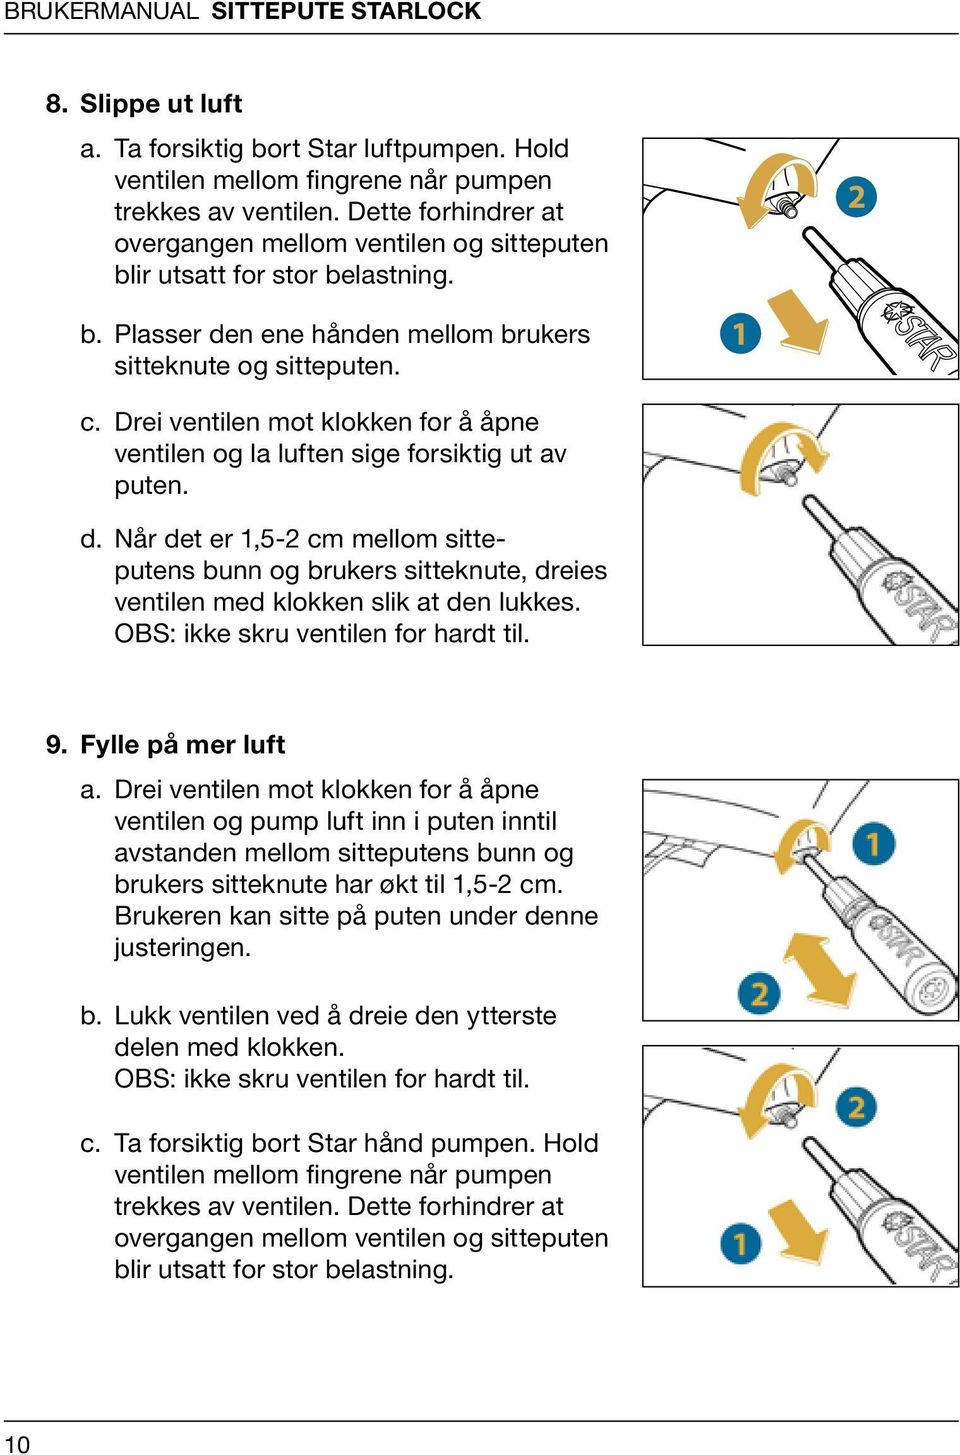 BrukerManual. sittepute starlock - PDF Gratis nedlasting